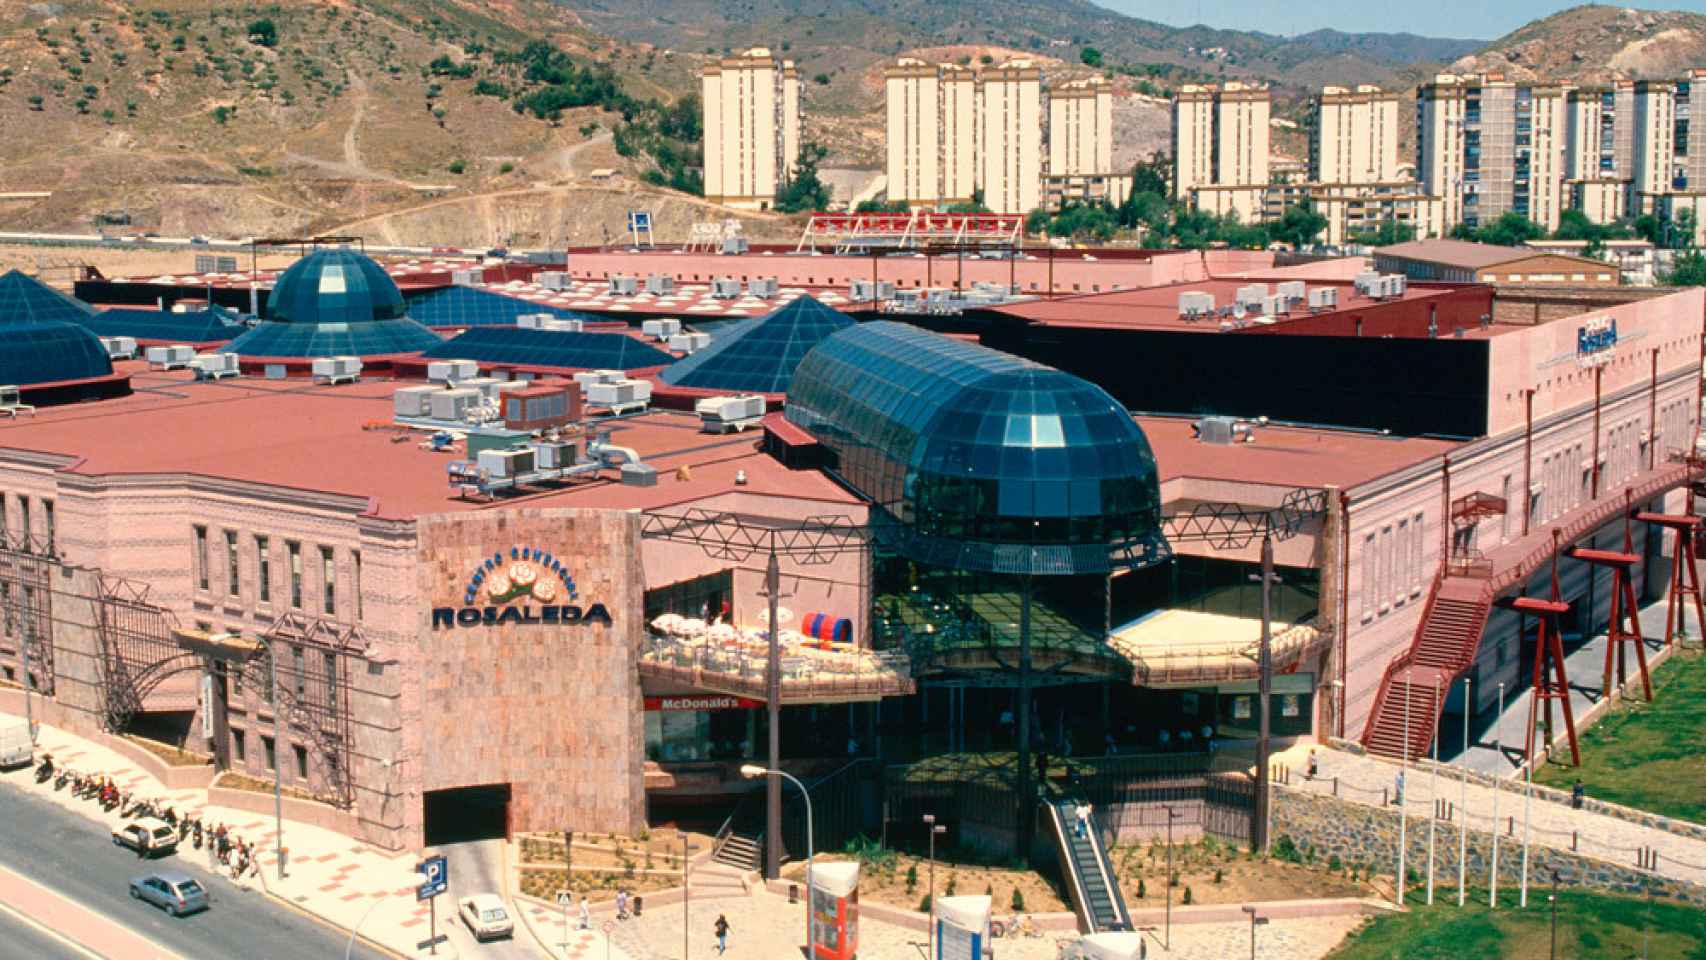 El centro comercial Rosaleda.